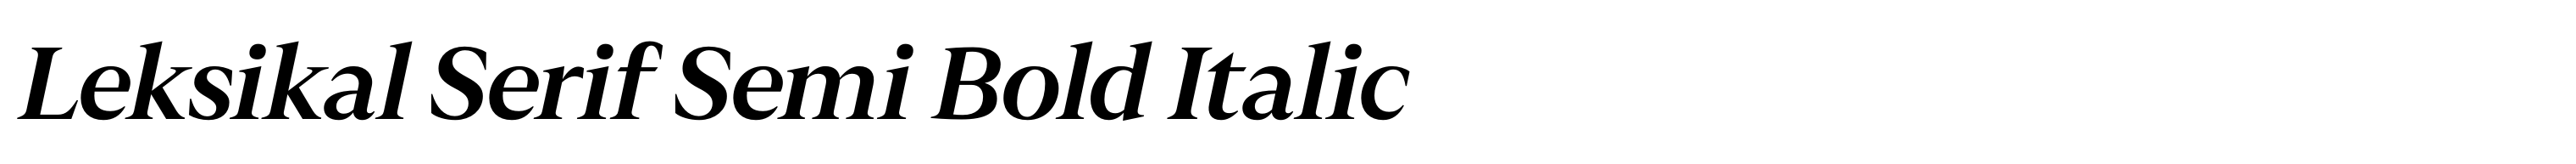 Leksikal Serif Semi Bold Italic